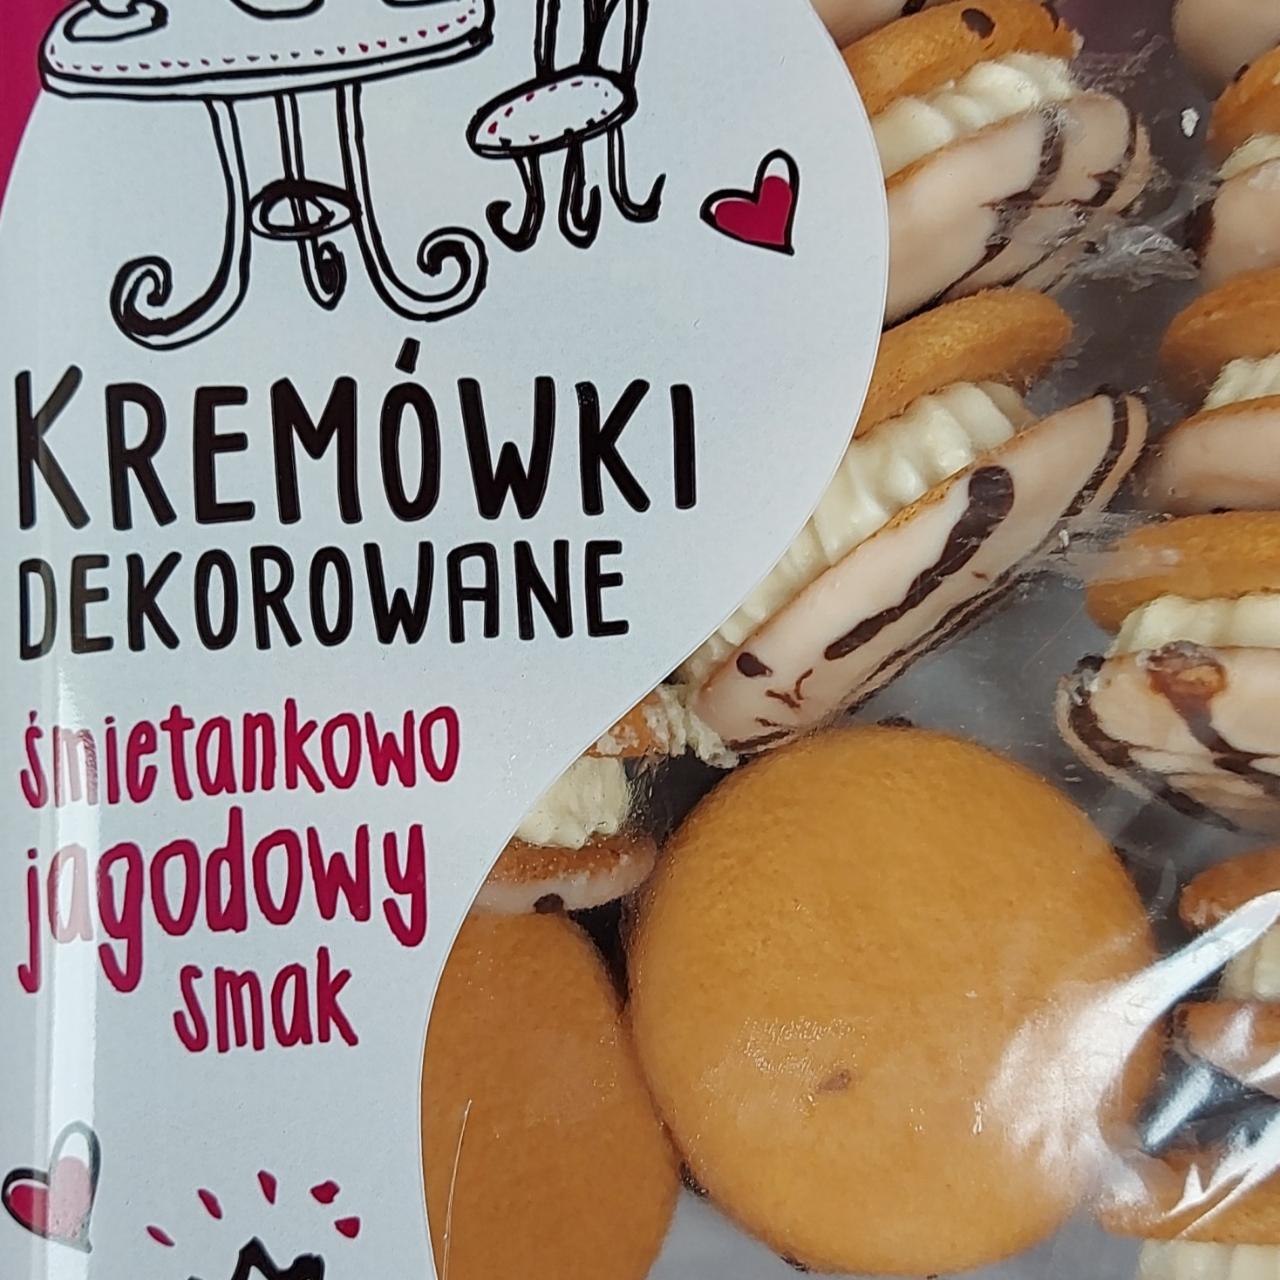 Фото - конфеты kremówki декорированные с кремом со вкусом ягод Dr Gerard